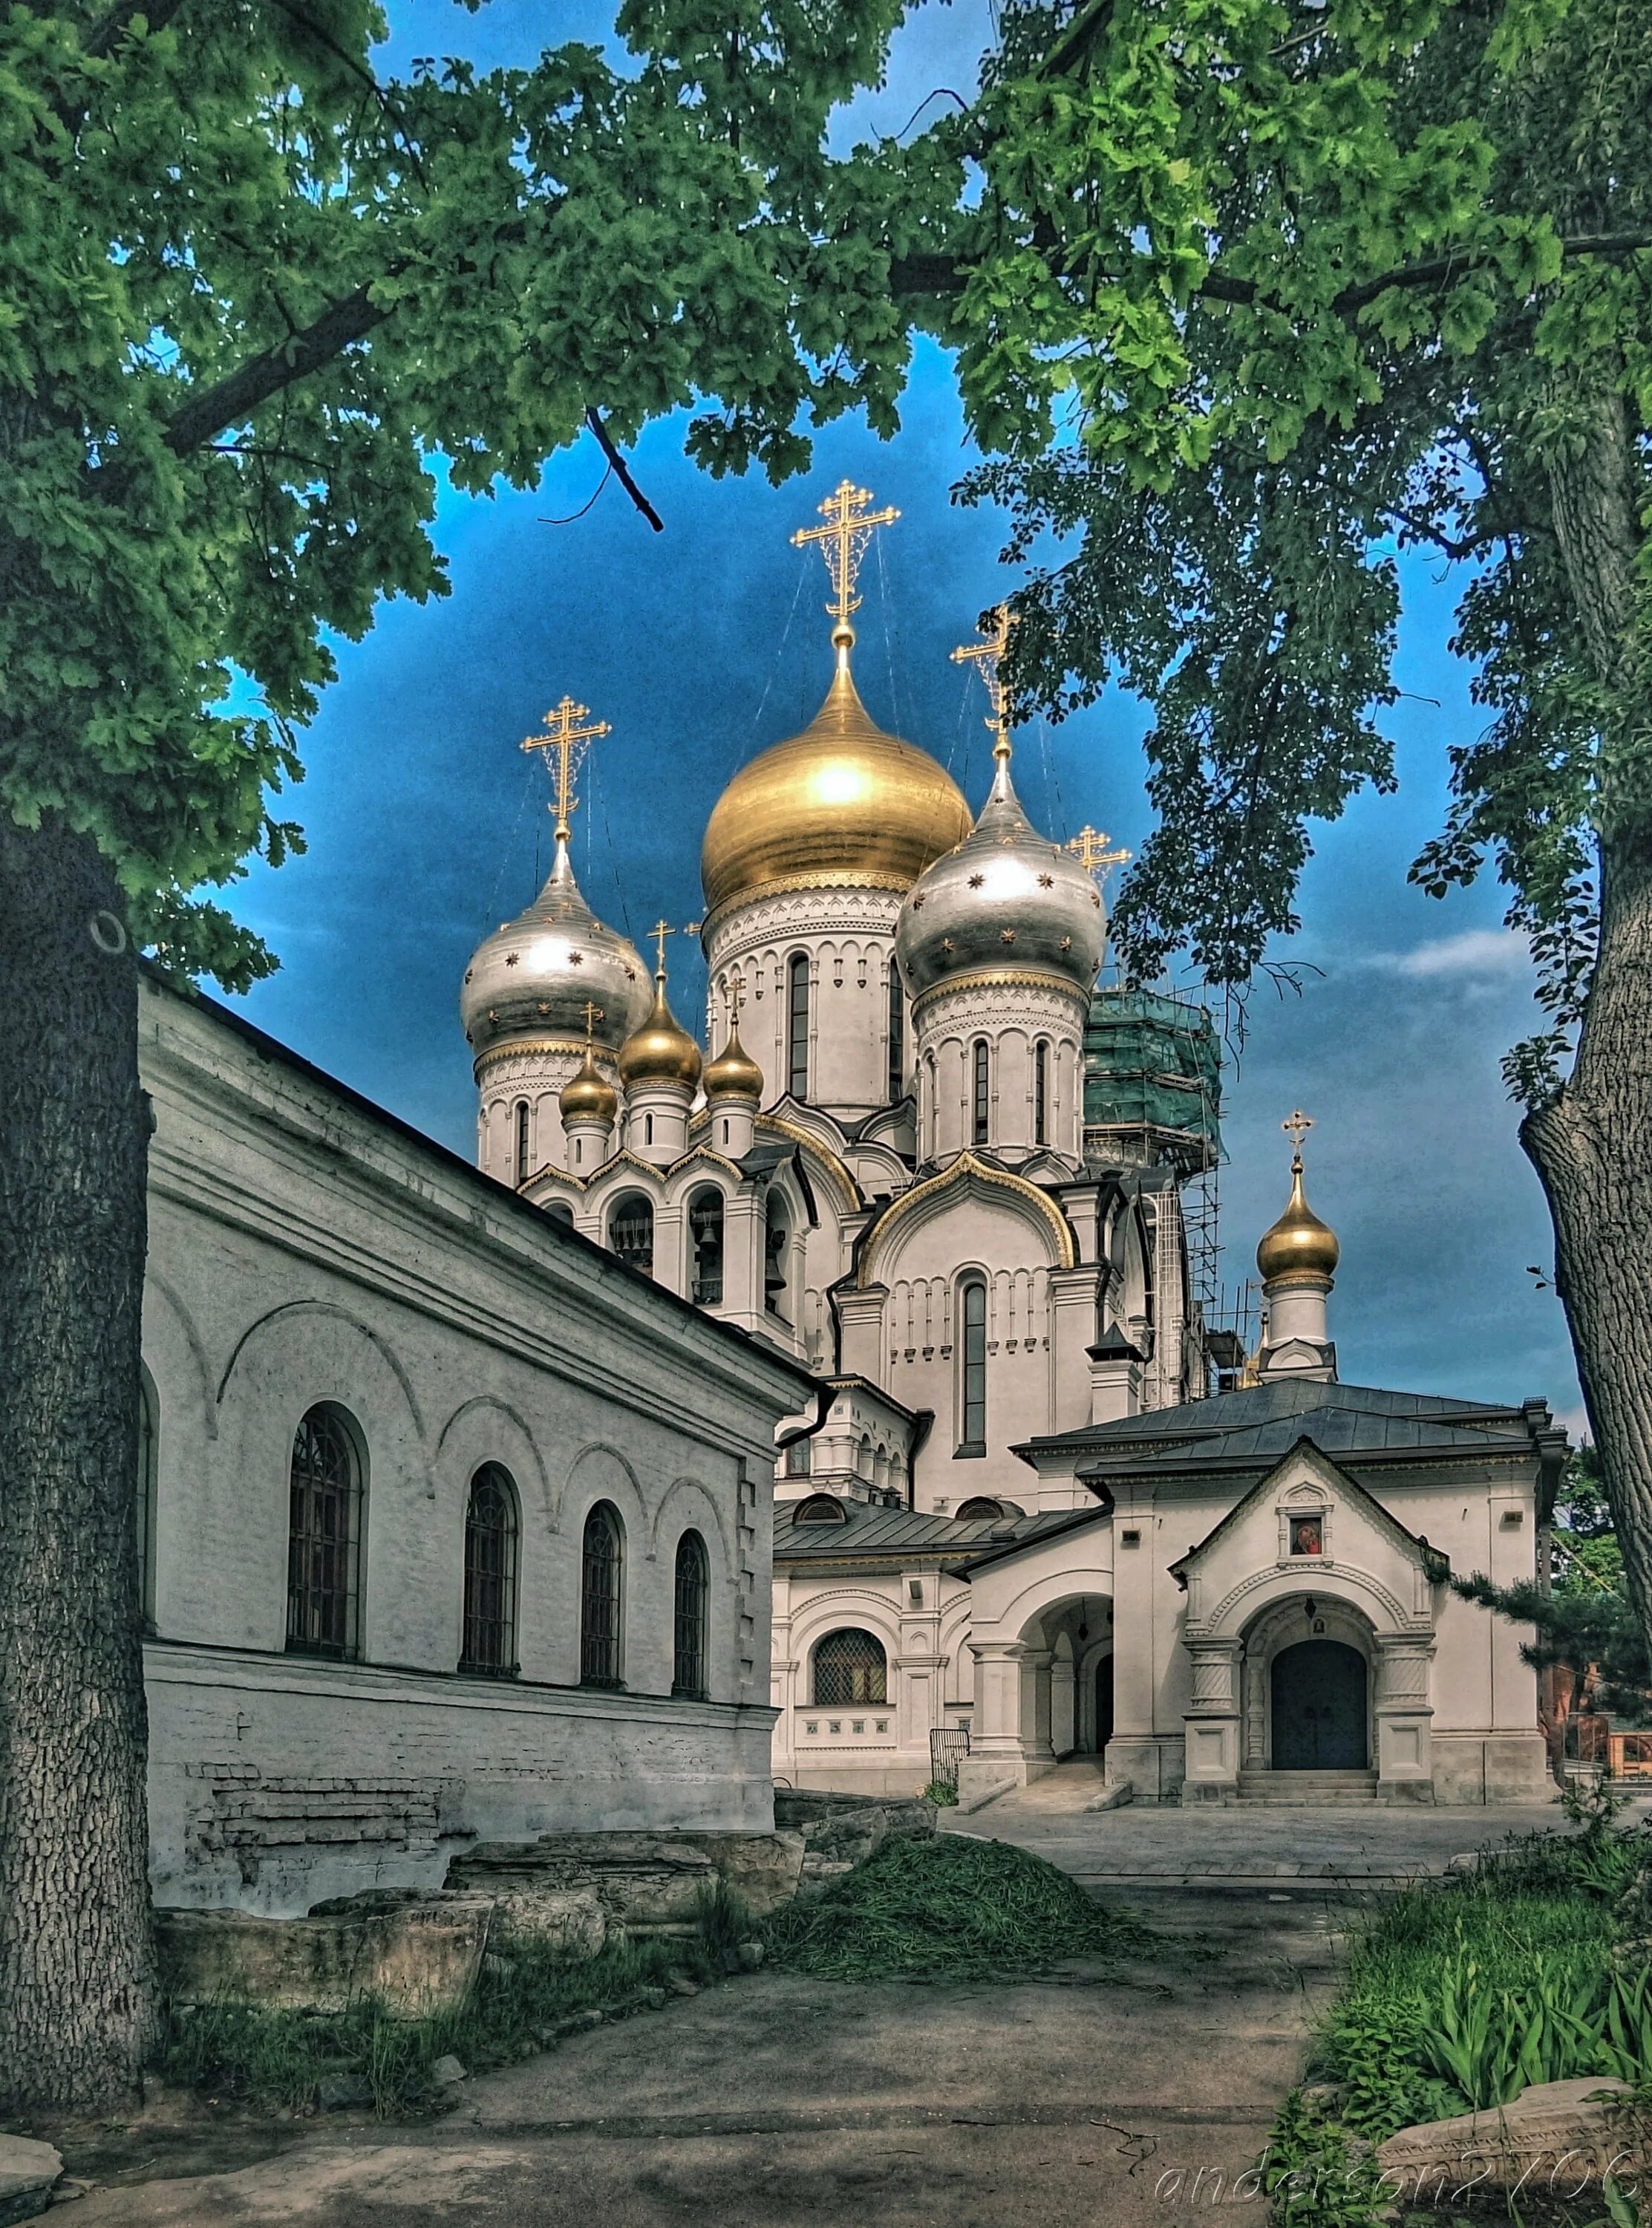 Зачатьевский монастырь в Москве. Зачатьевский монастырь 19 век.